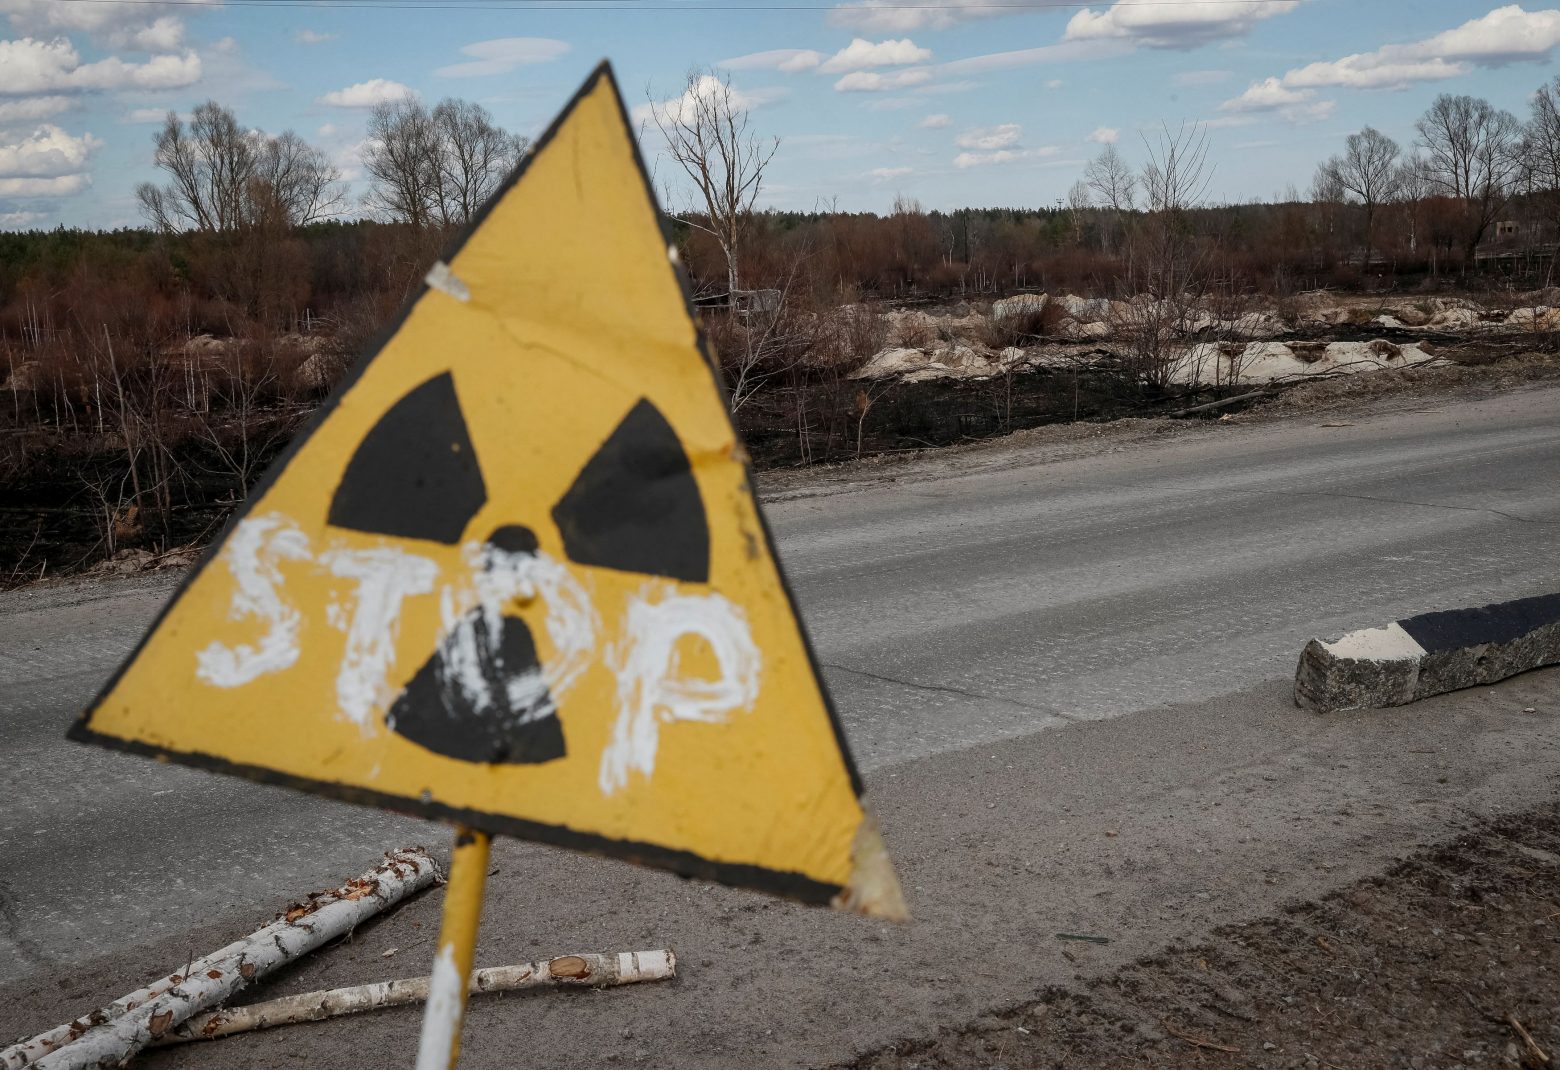 Τσερνόμπιλ: «Μη φυσιολογικά» τα επίπεδα ραδιενέργειας, σύμφωνα με τον Διεθνή Οργανισμό Ατομικής Ενέργειας